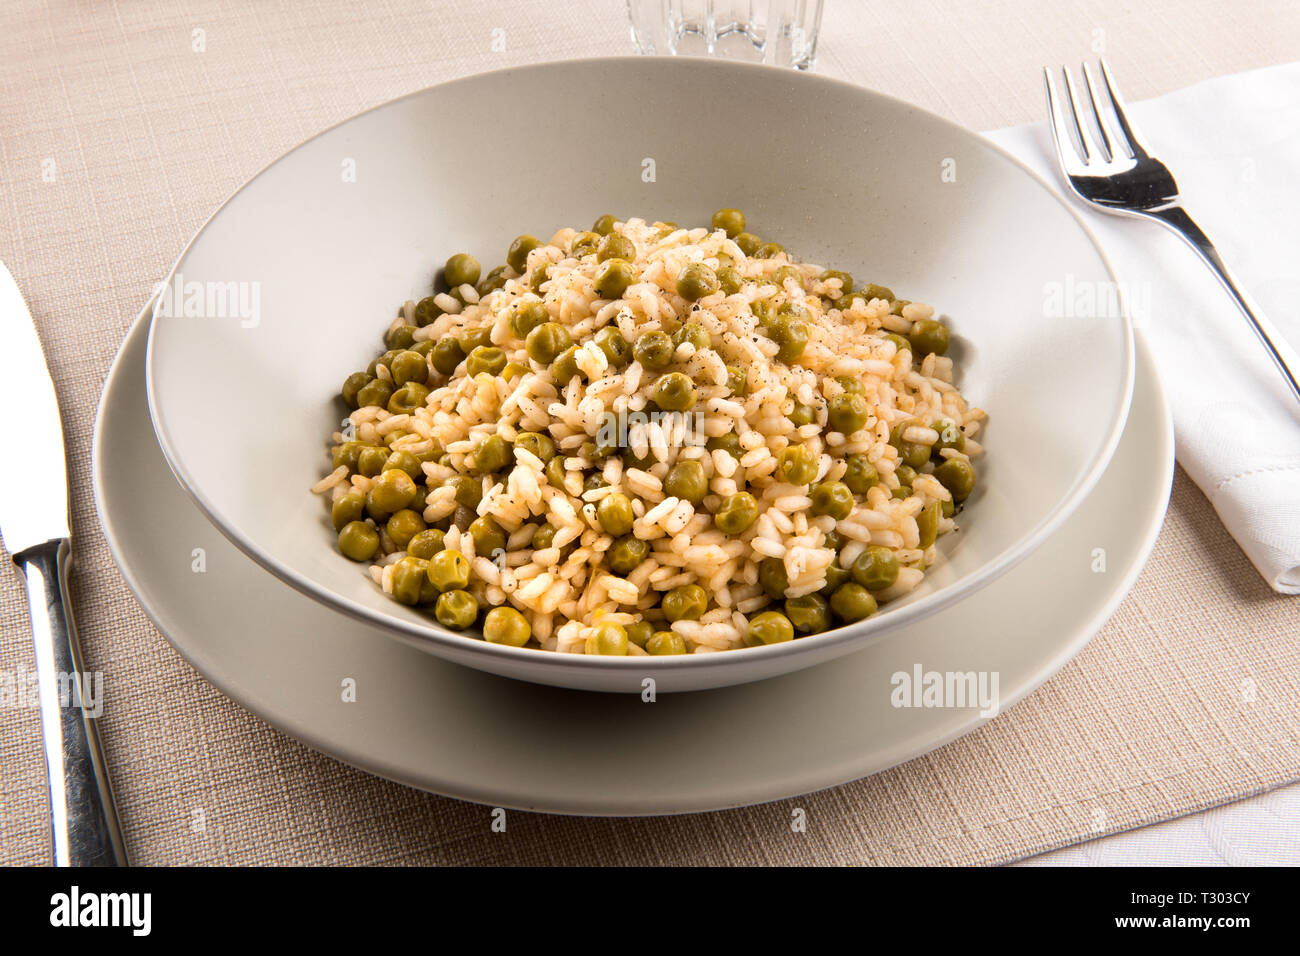 Assiette du traditionnel Risi e Bisi du Veneto, Italie faite avec stock, le riz, les assaisonnements et les pois verts frais, servi à table avec des ustensiles Banque D'Images